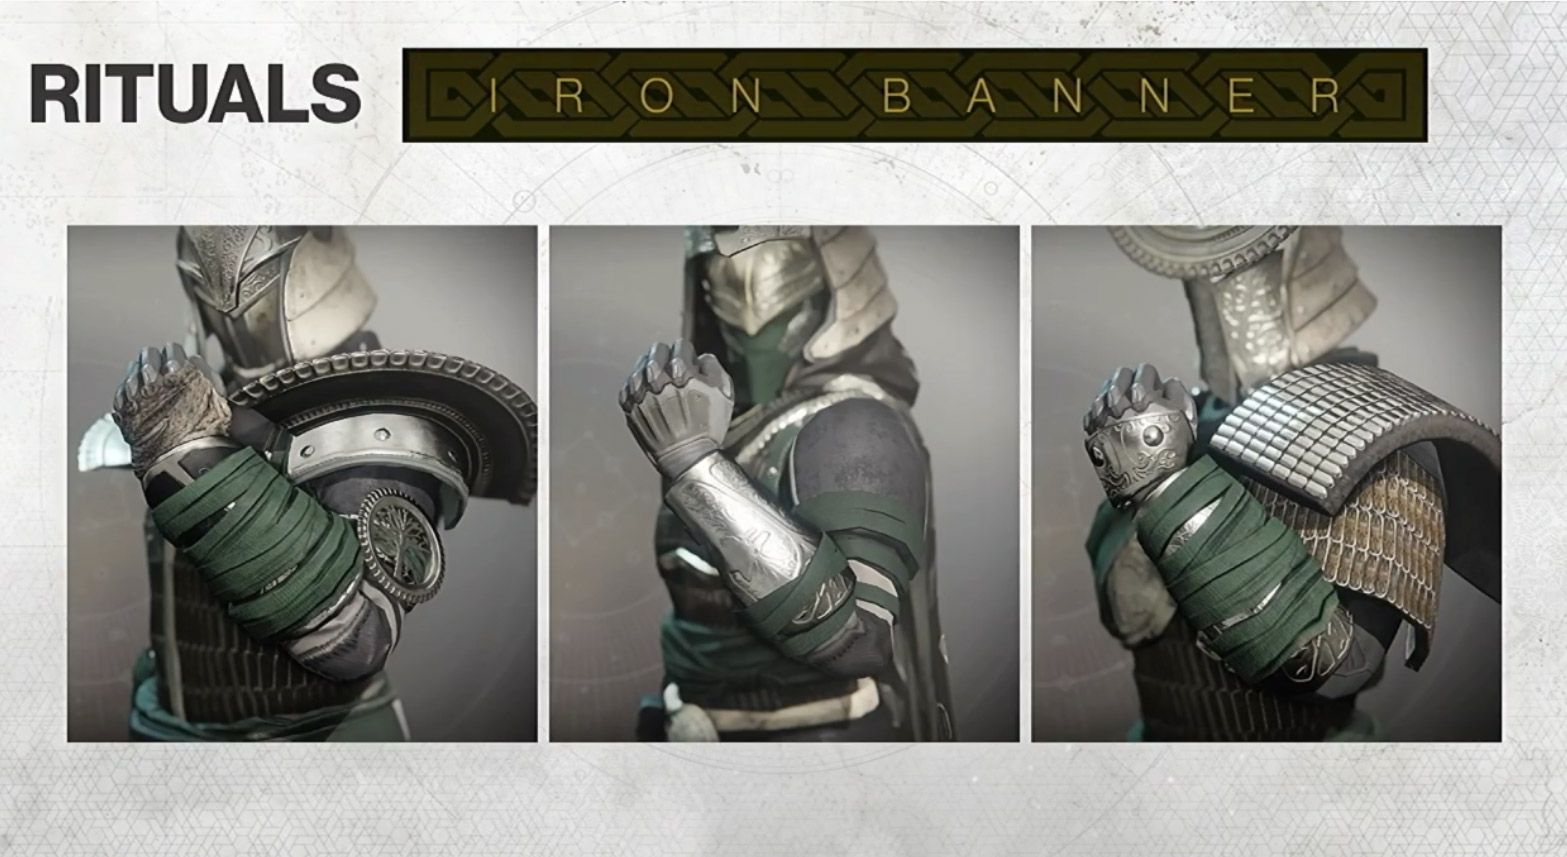 Iron_banner_gear